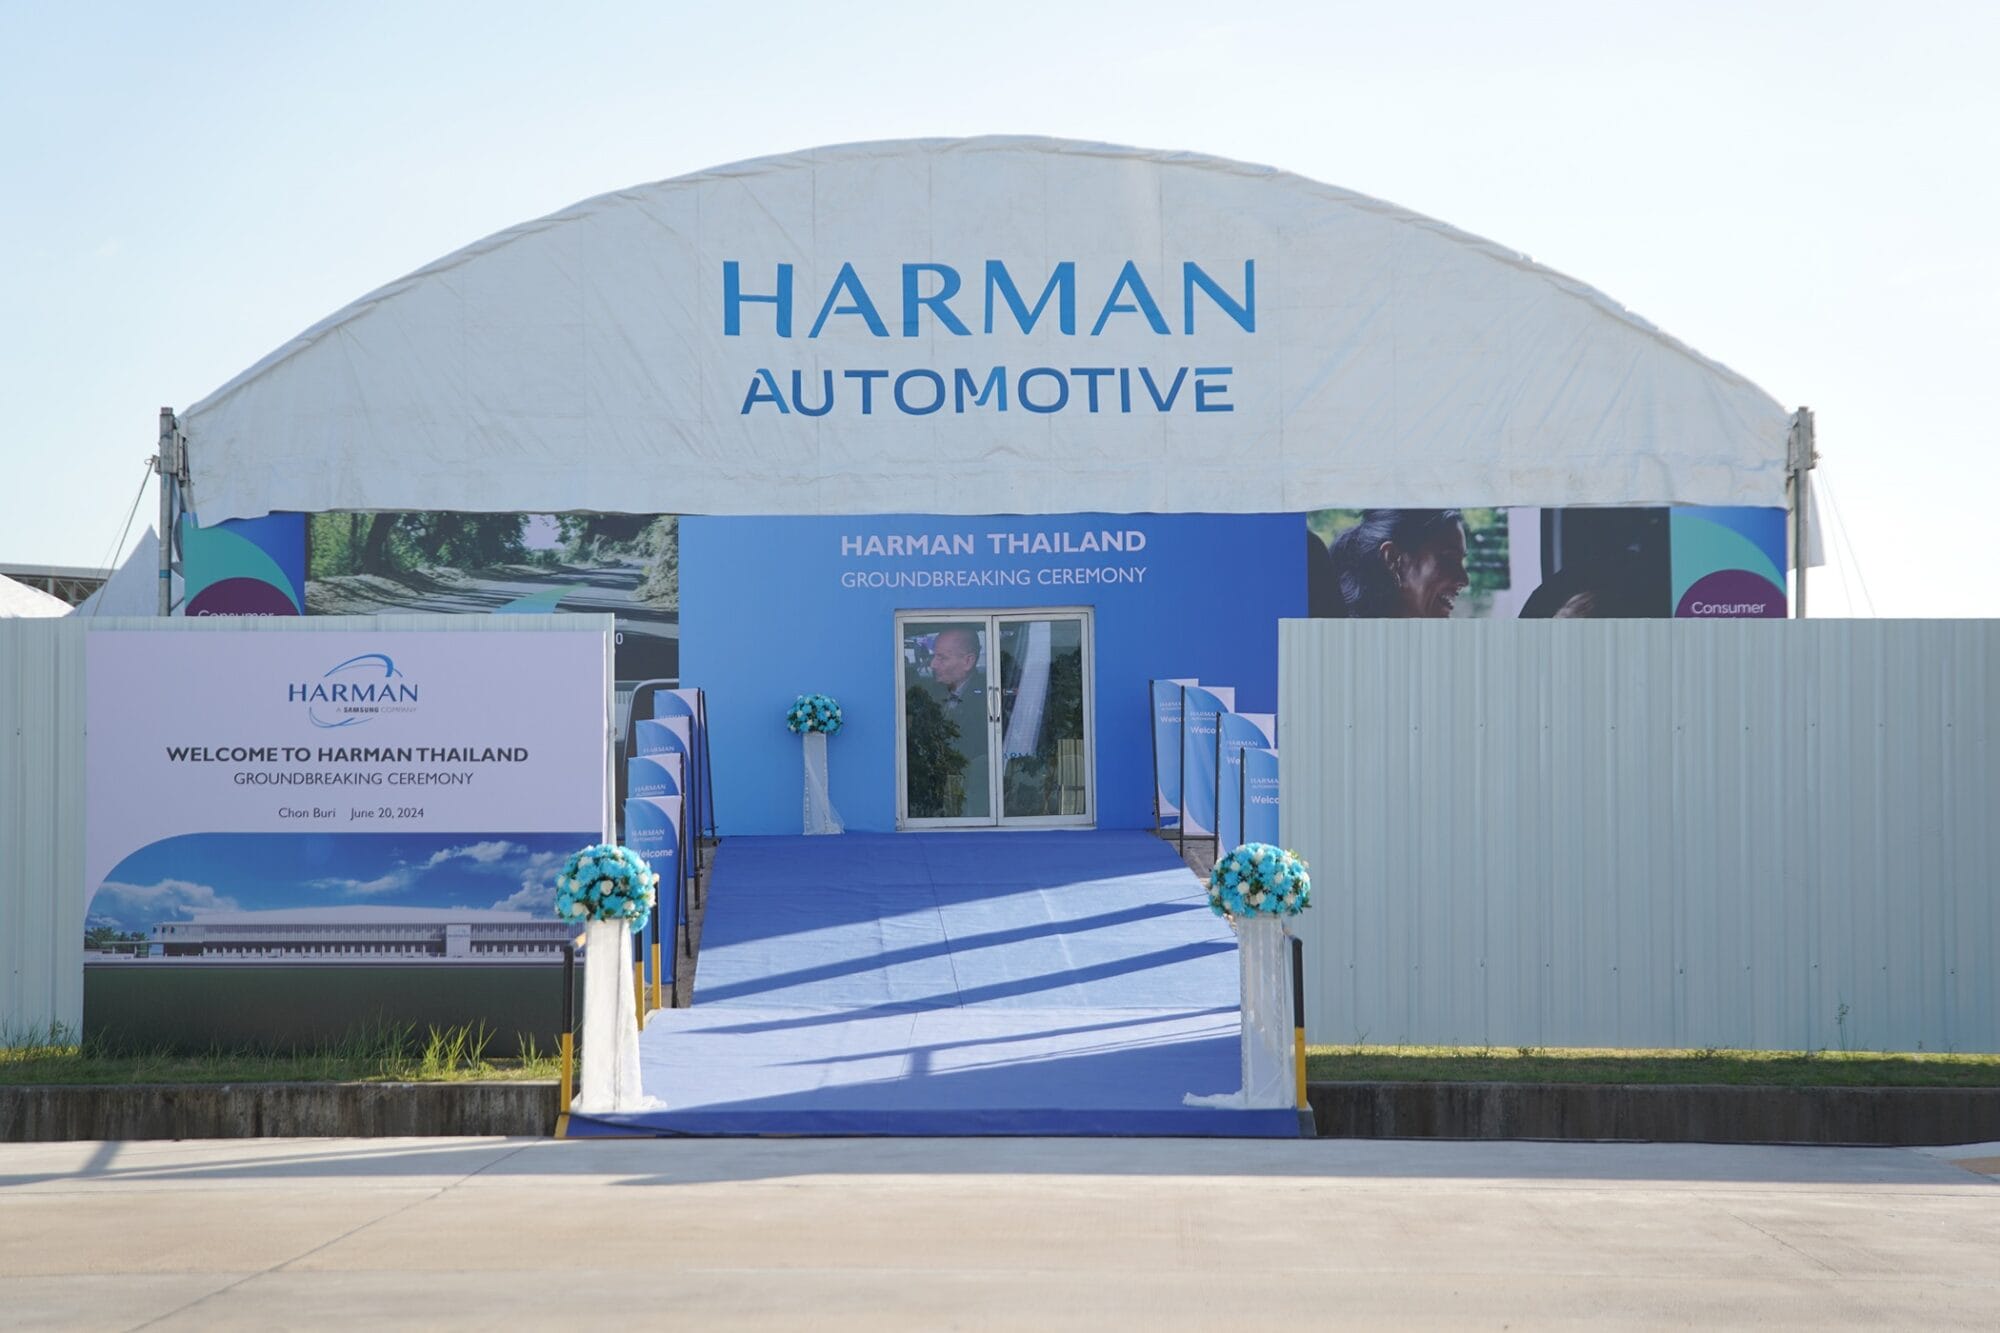 HARMAN ประกาศครั้งสำคัญเตรียมเปิดโรงงานผลิตแห่งใหม่ในประเทศไทย 7